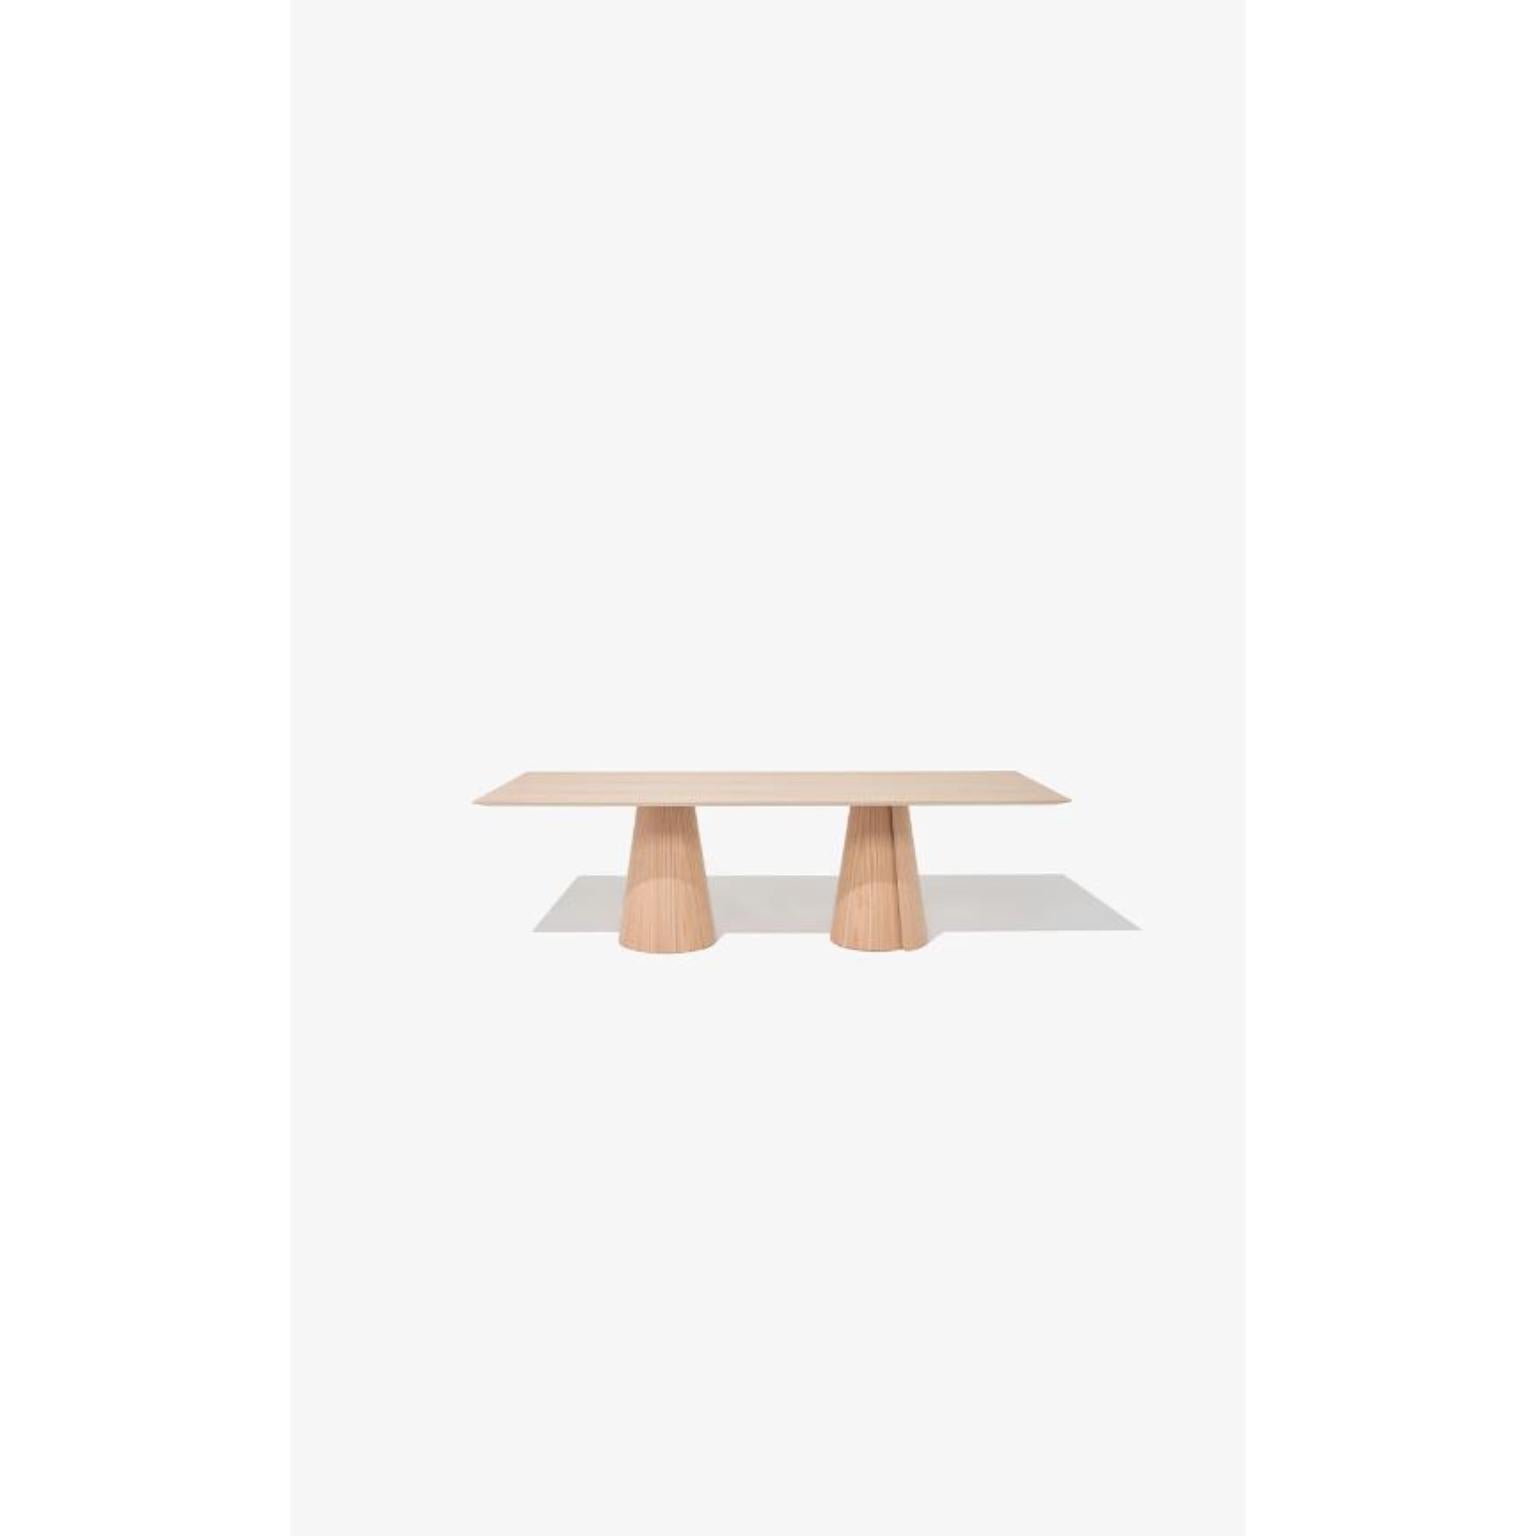 Table de salle à manger rectangulaire Volta 260 de Wentz
Dimensions : D 110 x L 260 x H 75 cm
Matériaux : Bois, contreplaqué, MDF, placage de bois naturel, acier.
Également disponible en différentes couleurs : Chêne, Noyer, Noir, Blanc, Vert